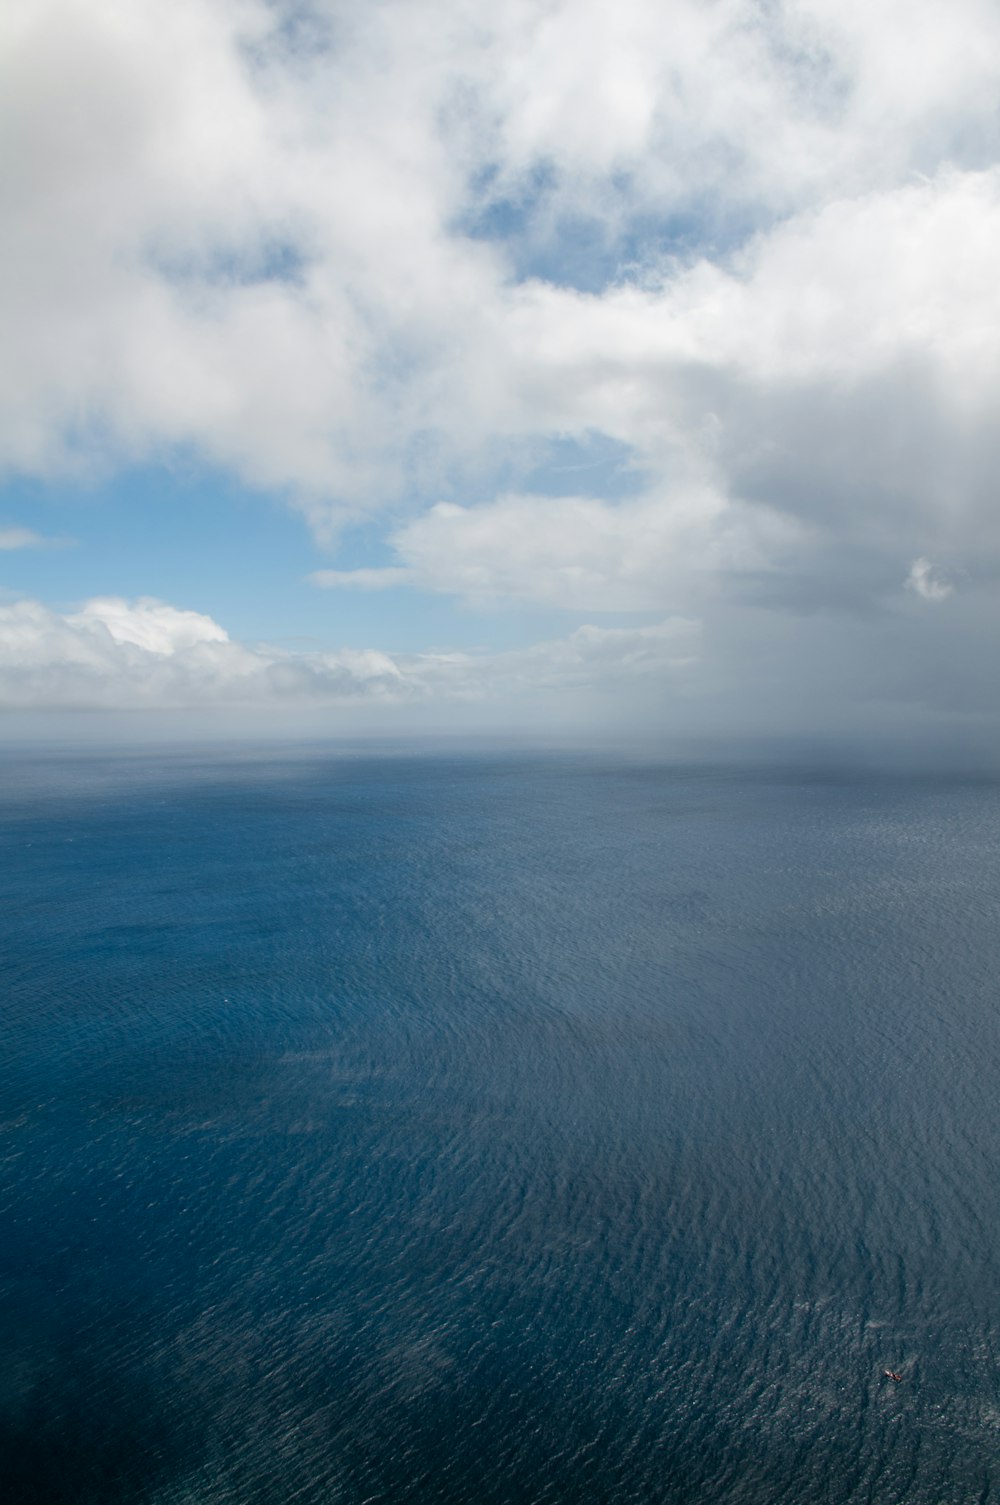 oceano azul sob nuvens brancas durante o dia